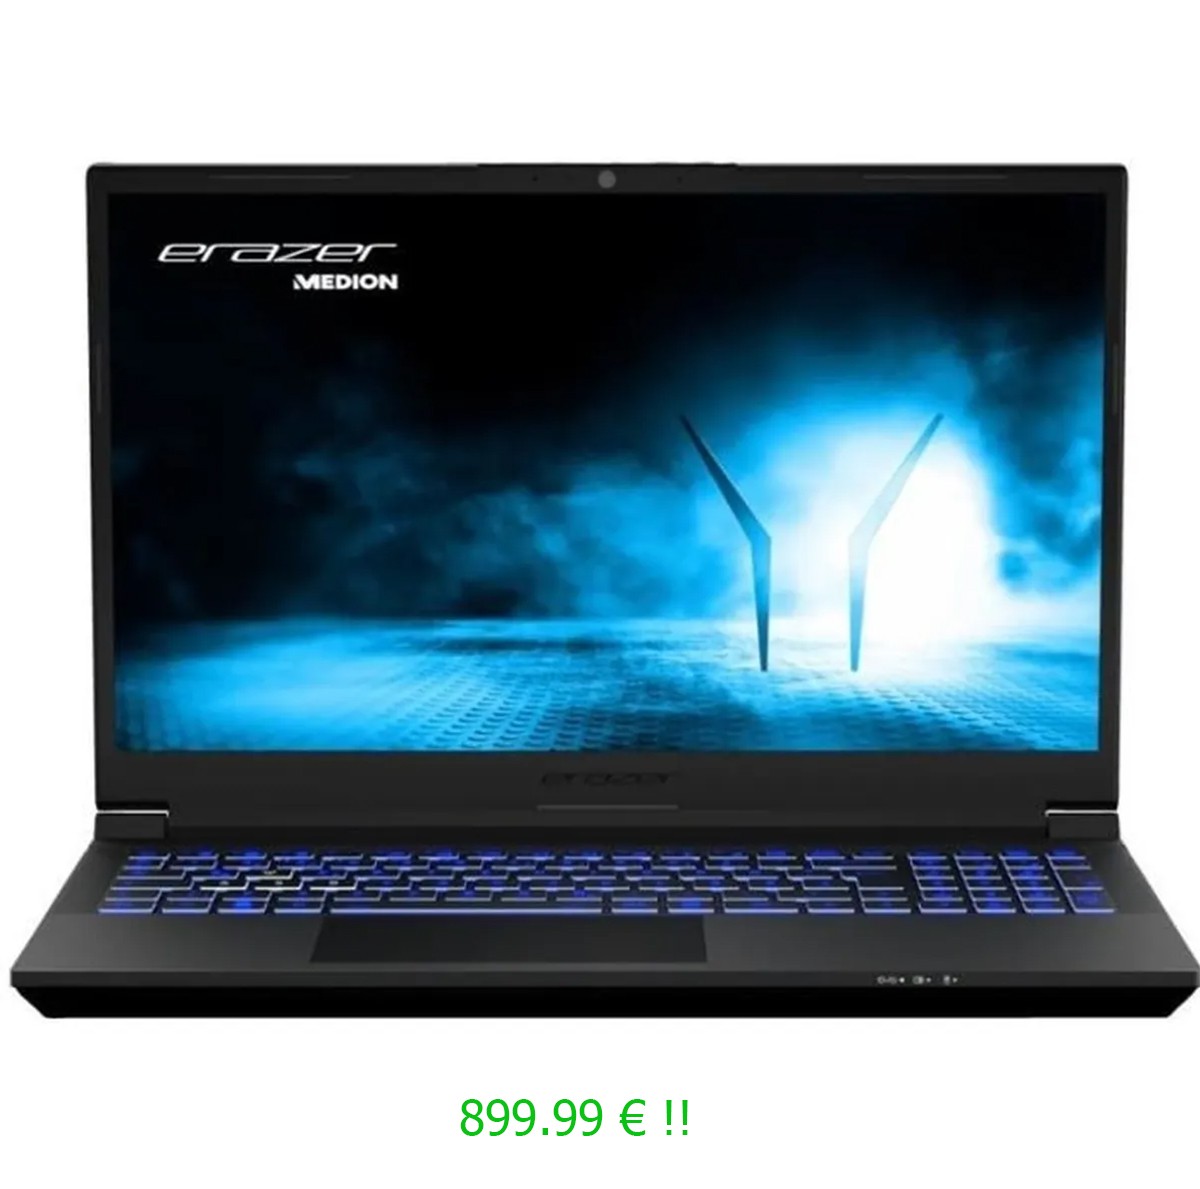 Une offre parfaite pour un laptop gamer 1080p à moins de 900 euros